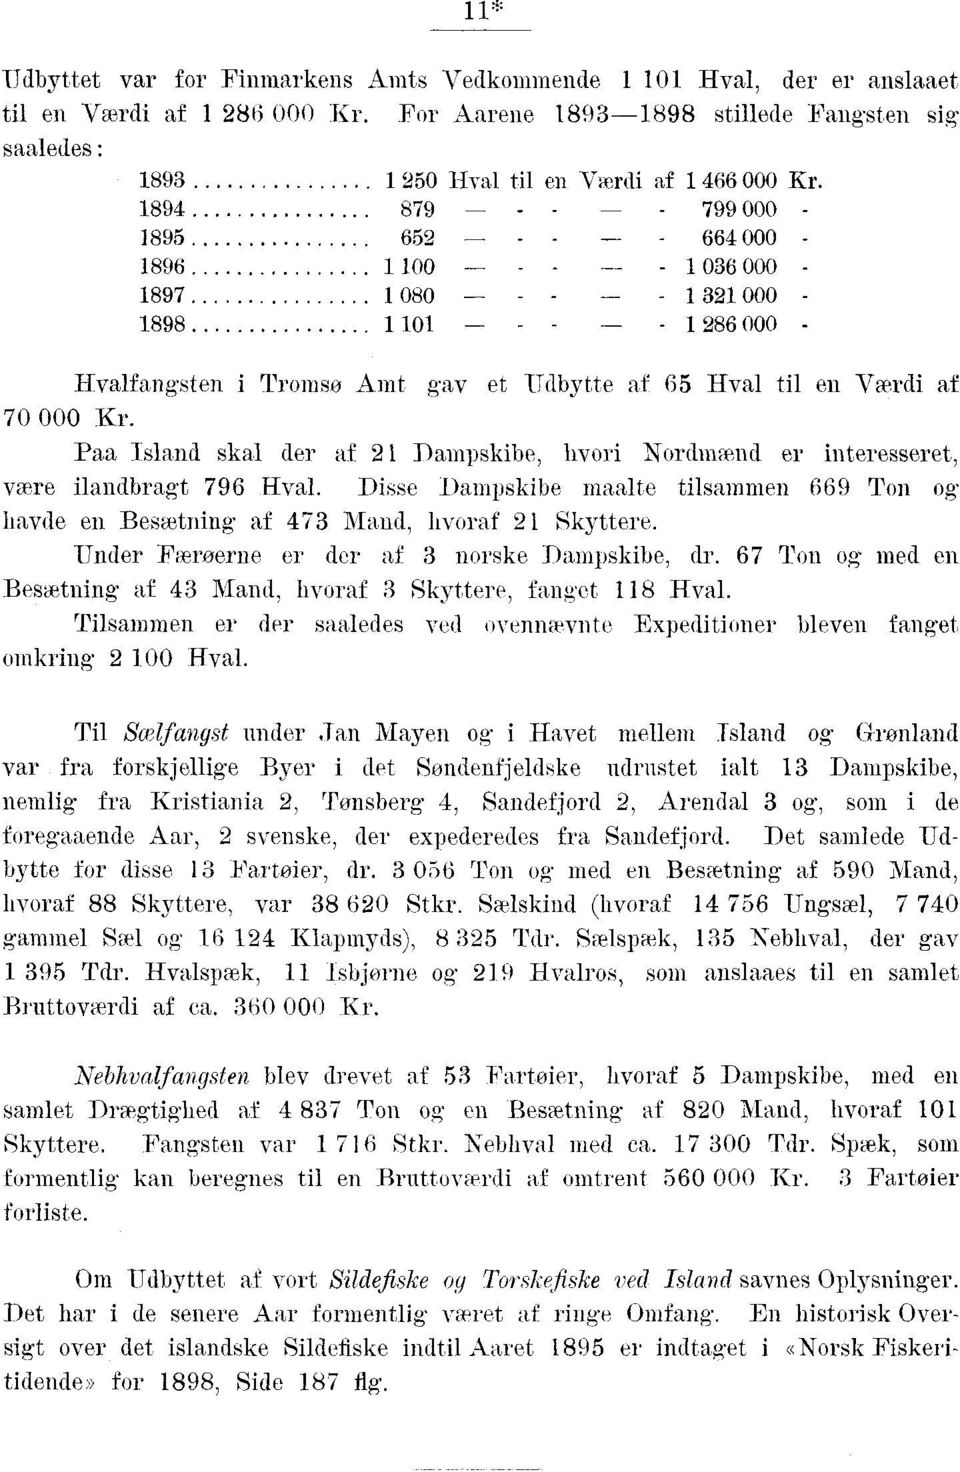 1894 879 799 000 1895 652 664 000 1896 1 100 1 036 000-1897 1 080 1 321 000 1898 1 101-1 286 000 Hvalfangsten i Tromso Amt gav et Udbytte af 65 Hval til en Værdi af 70 000 Kr.